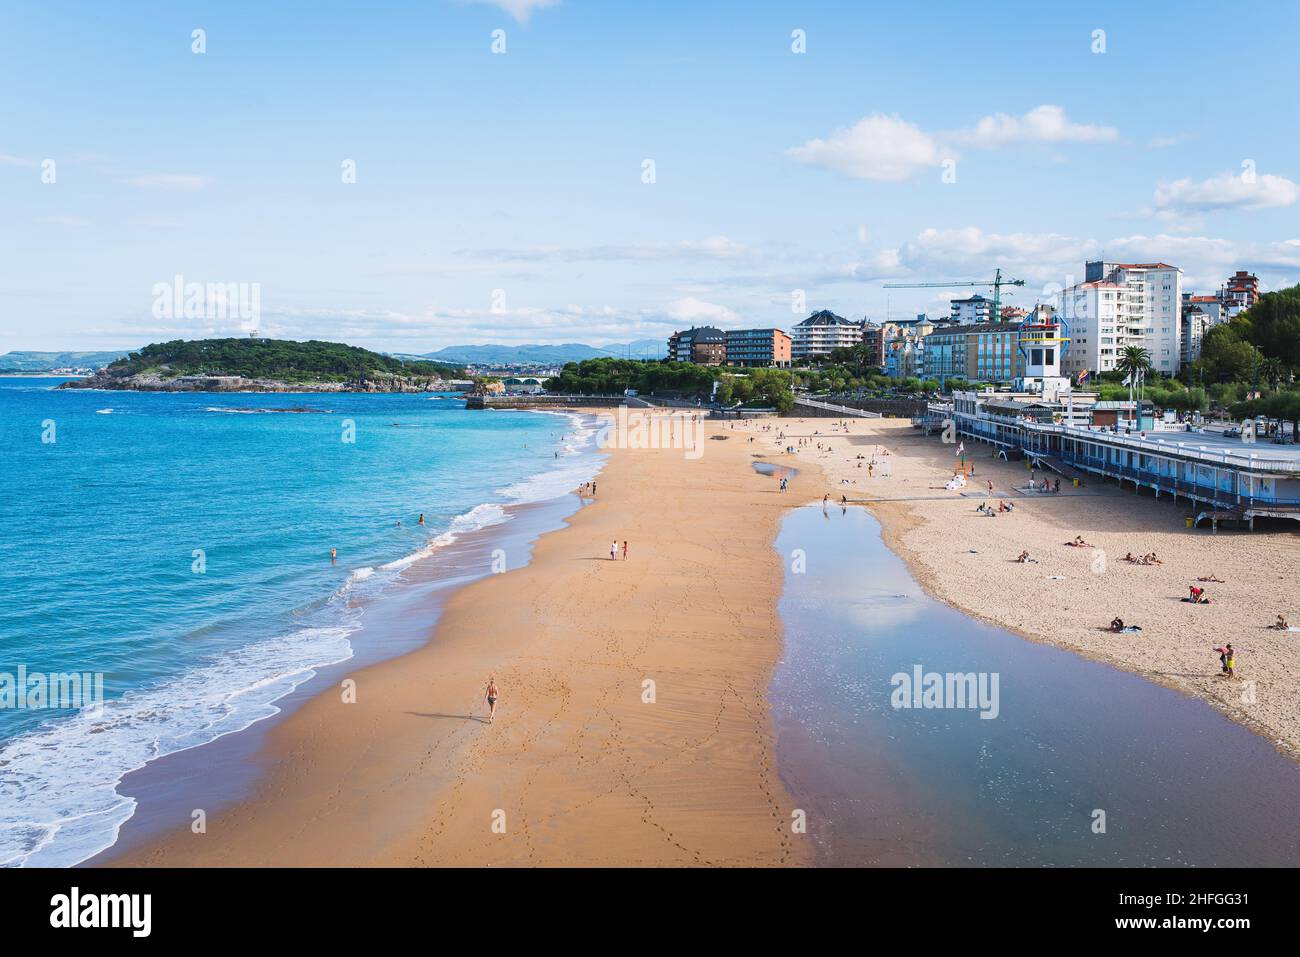 El Sardinero beach, Santander, Spain Stock Photo